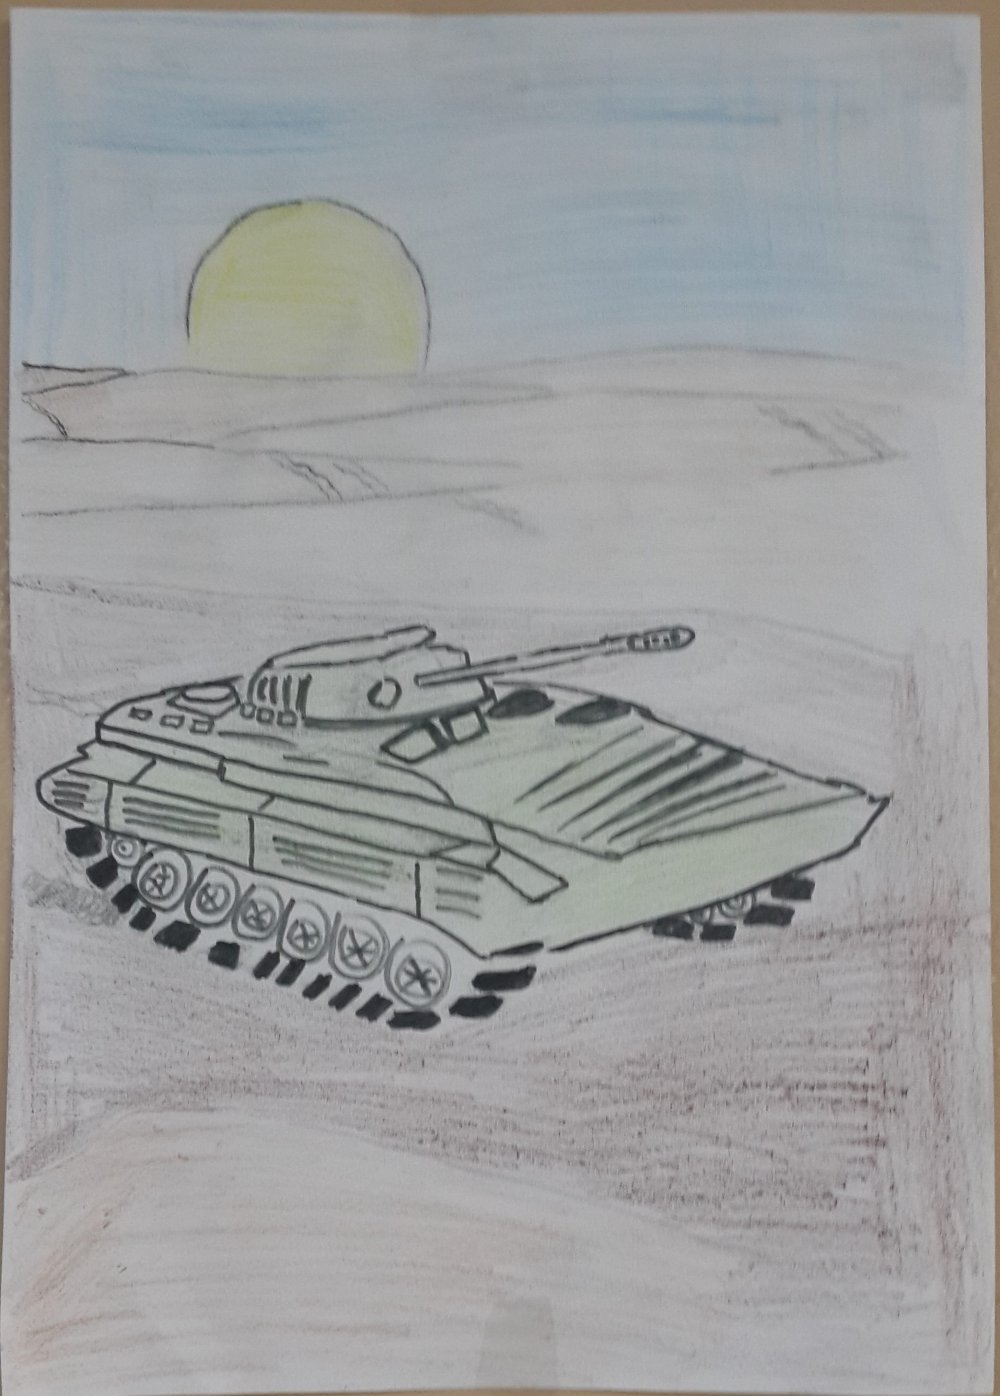 Сталинградская битва рисунки детей